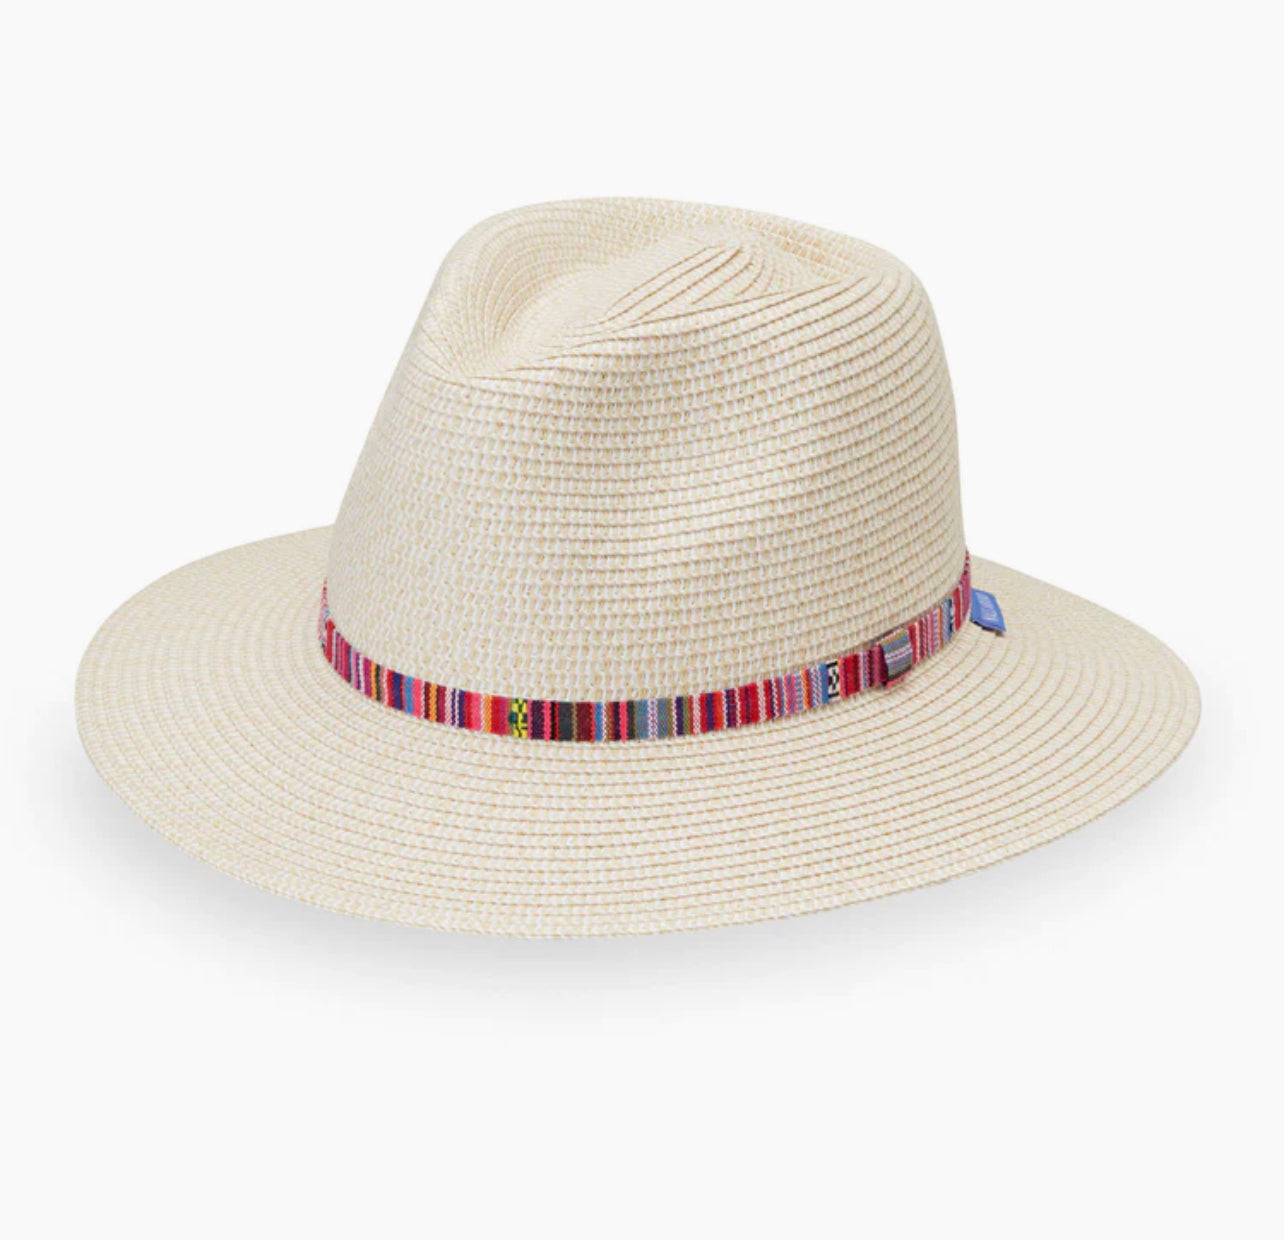 Wallaroo Sedona hat